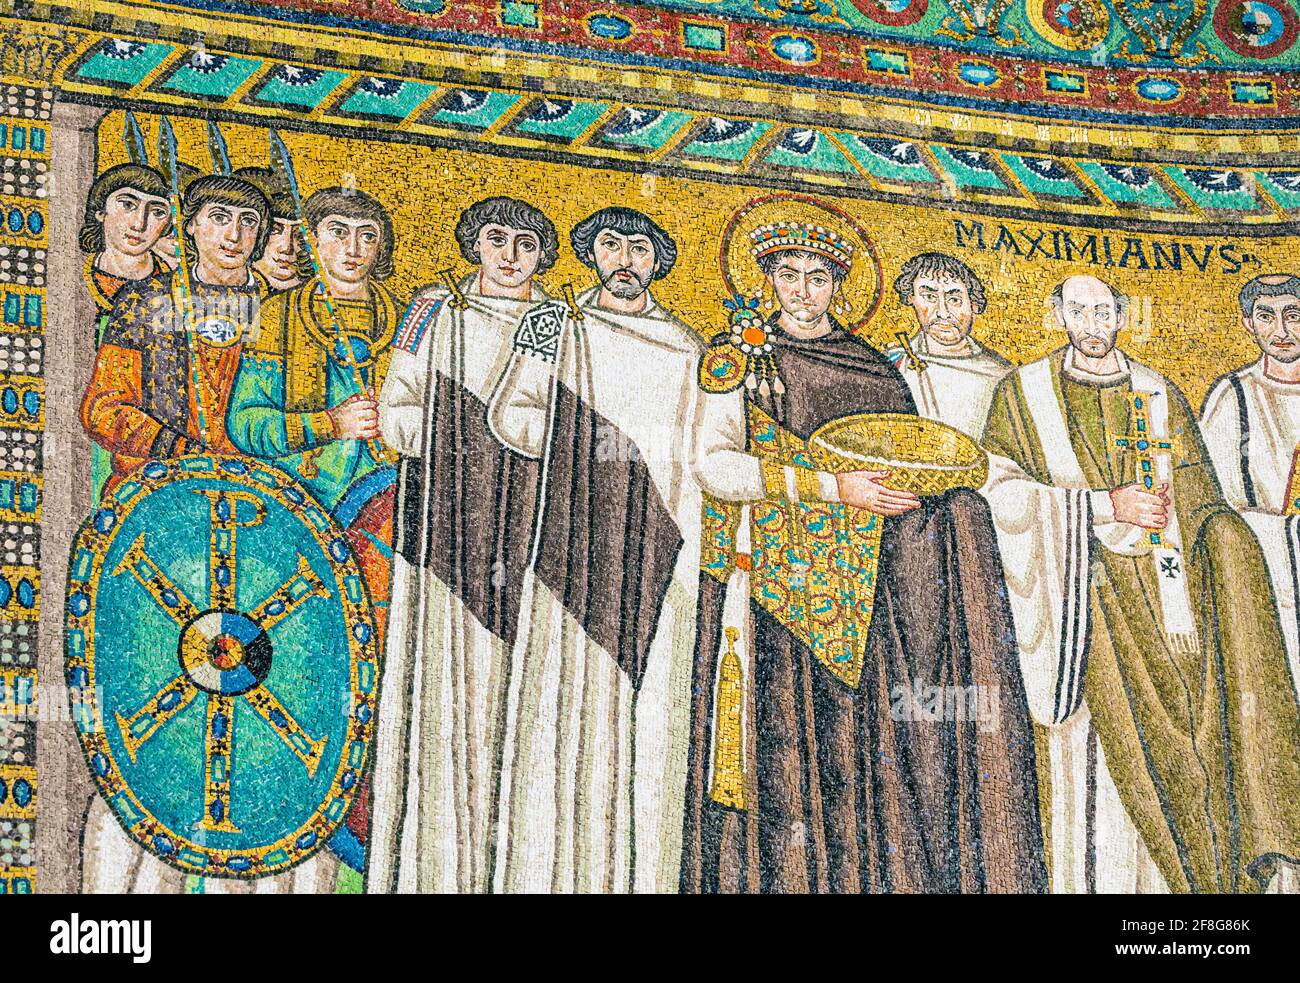 Ravenna, provincia di Ravenna, Italia. Mosaico nella basilica di San vitale dell'Imperatore Giustiniano i con i membri della sua corte. Sta portando un cesto che possib Foto Stock